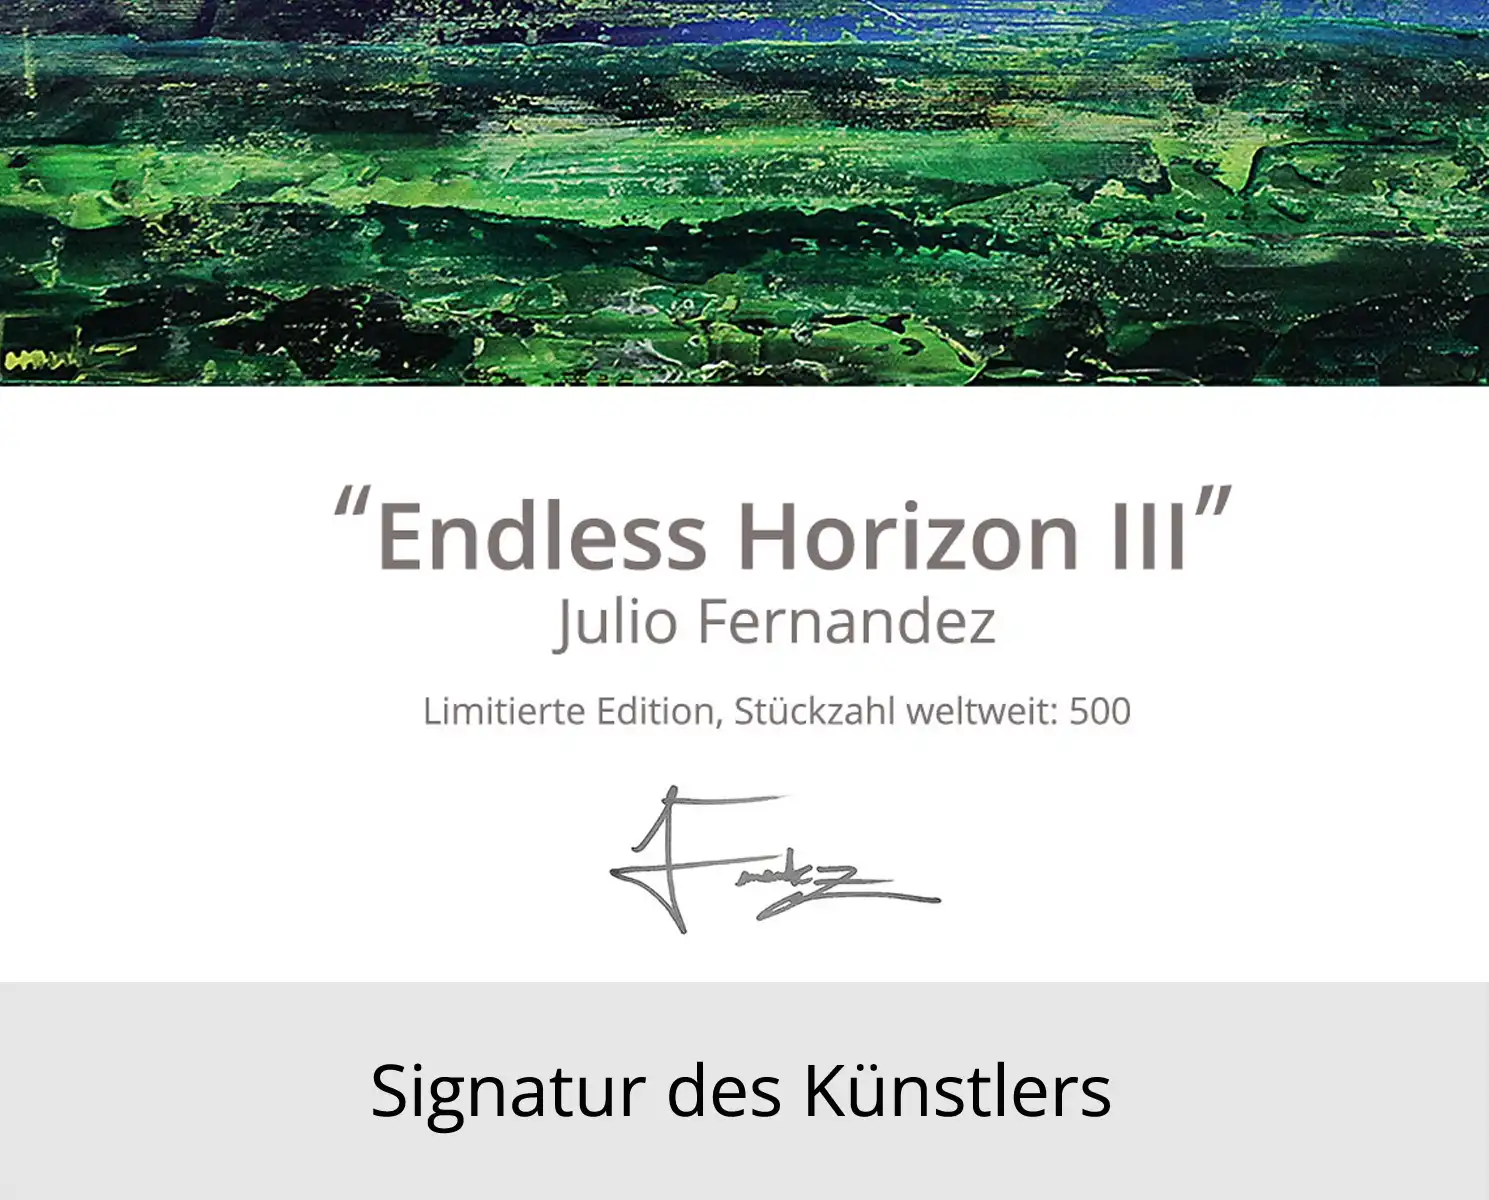 Limitierte Edition auf Papier, J. Fernandez "Endless Horizon III", Fineartprint